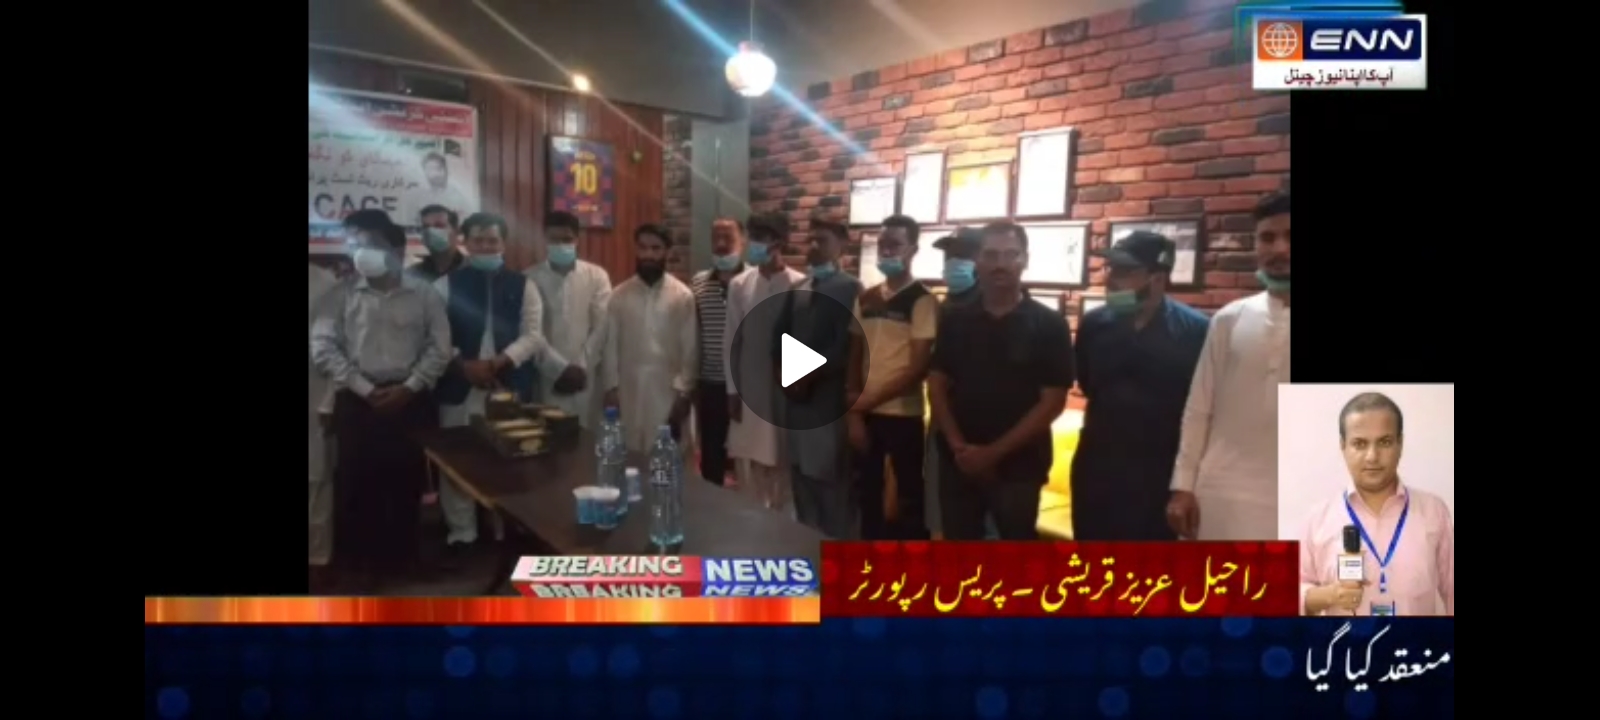 اینٹی کرپشن اینٹی کرائم فورم کراچی کے تحت ایک مقامی ریسٹورنٹ میں اجلاس منعقد